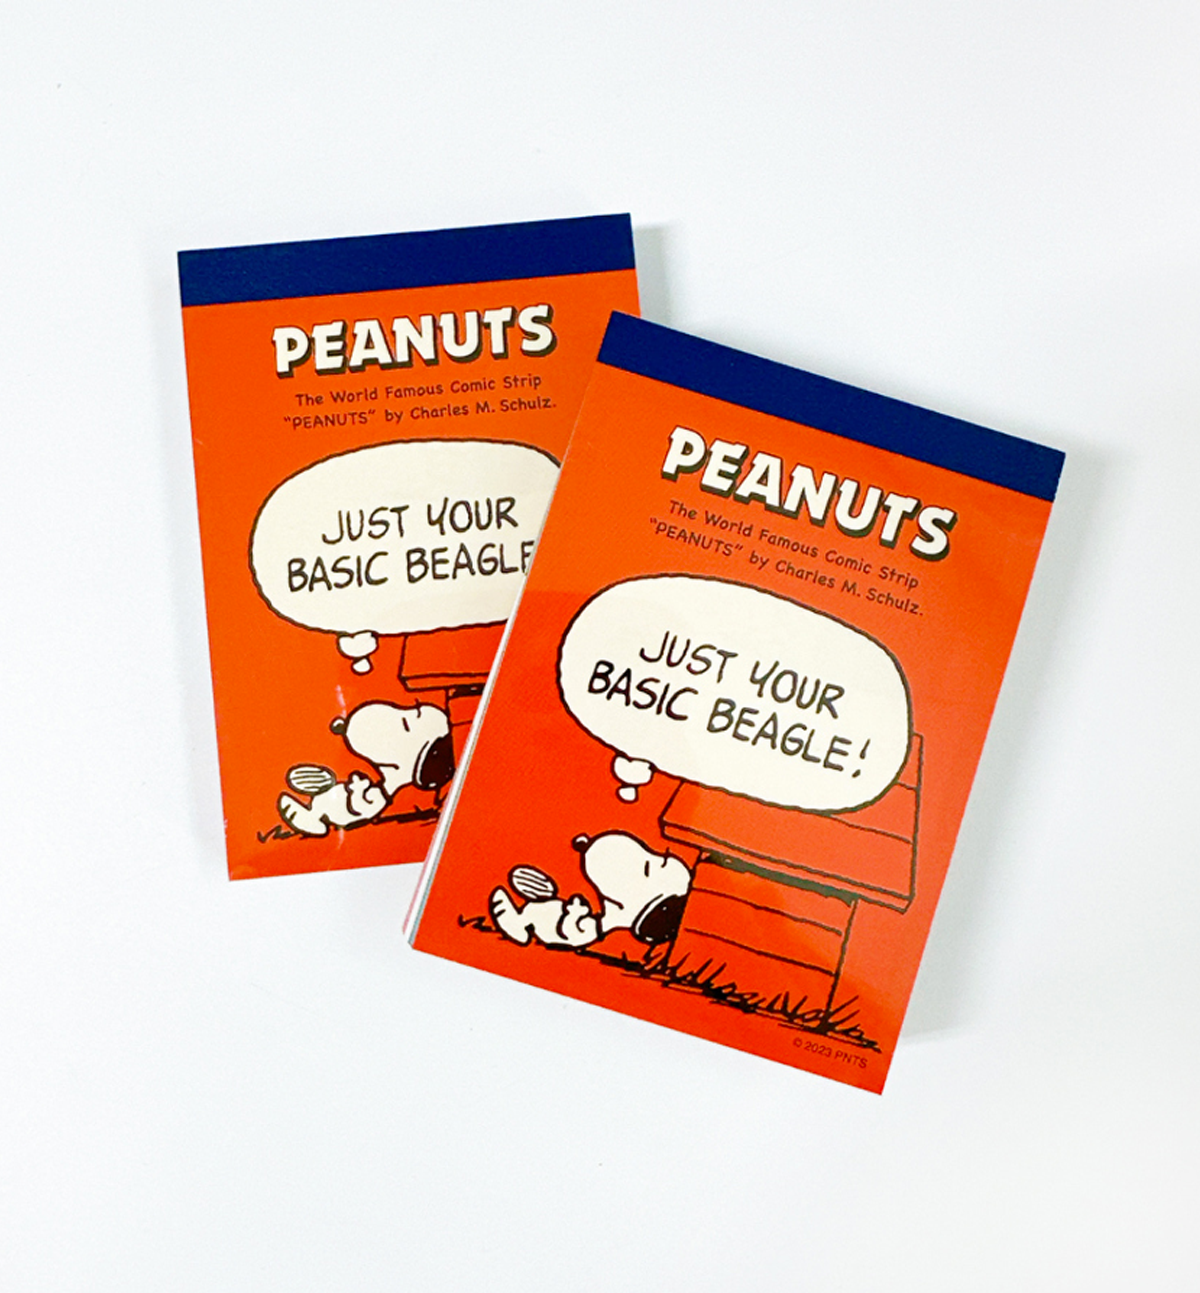 Peanuts Snoopy Mini Memopad [Thinking]